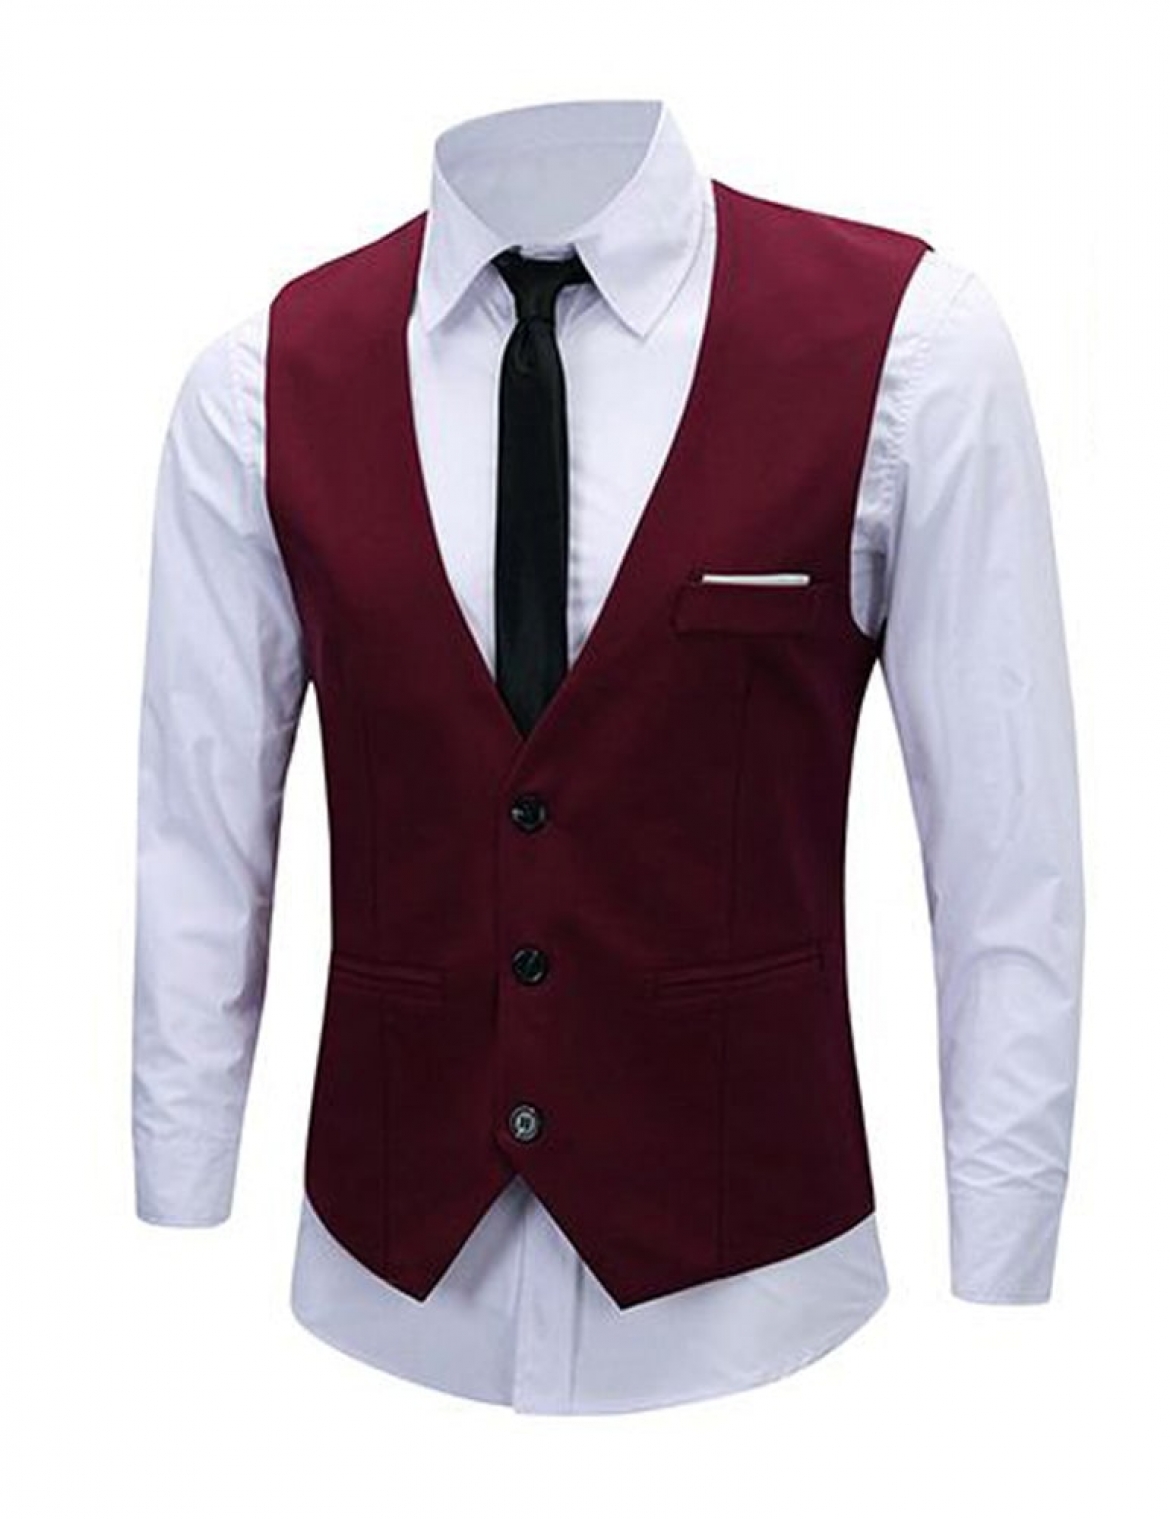 Burgundy Suit Vests & Tuxedo Vests | Gentleman's Guru